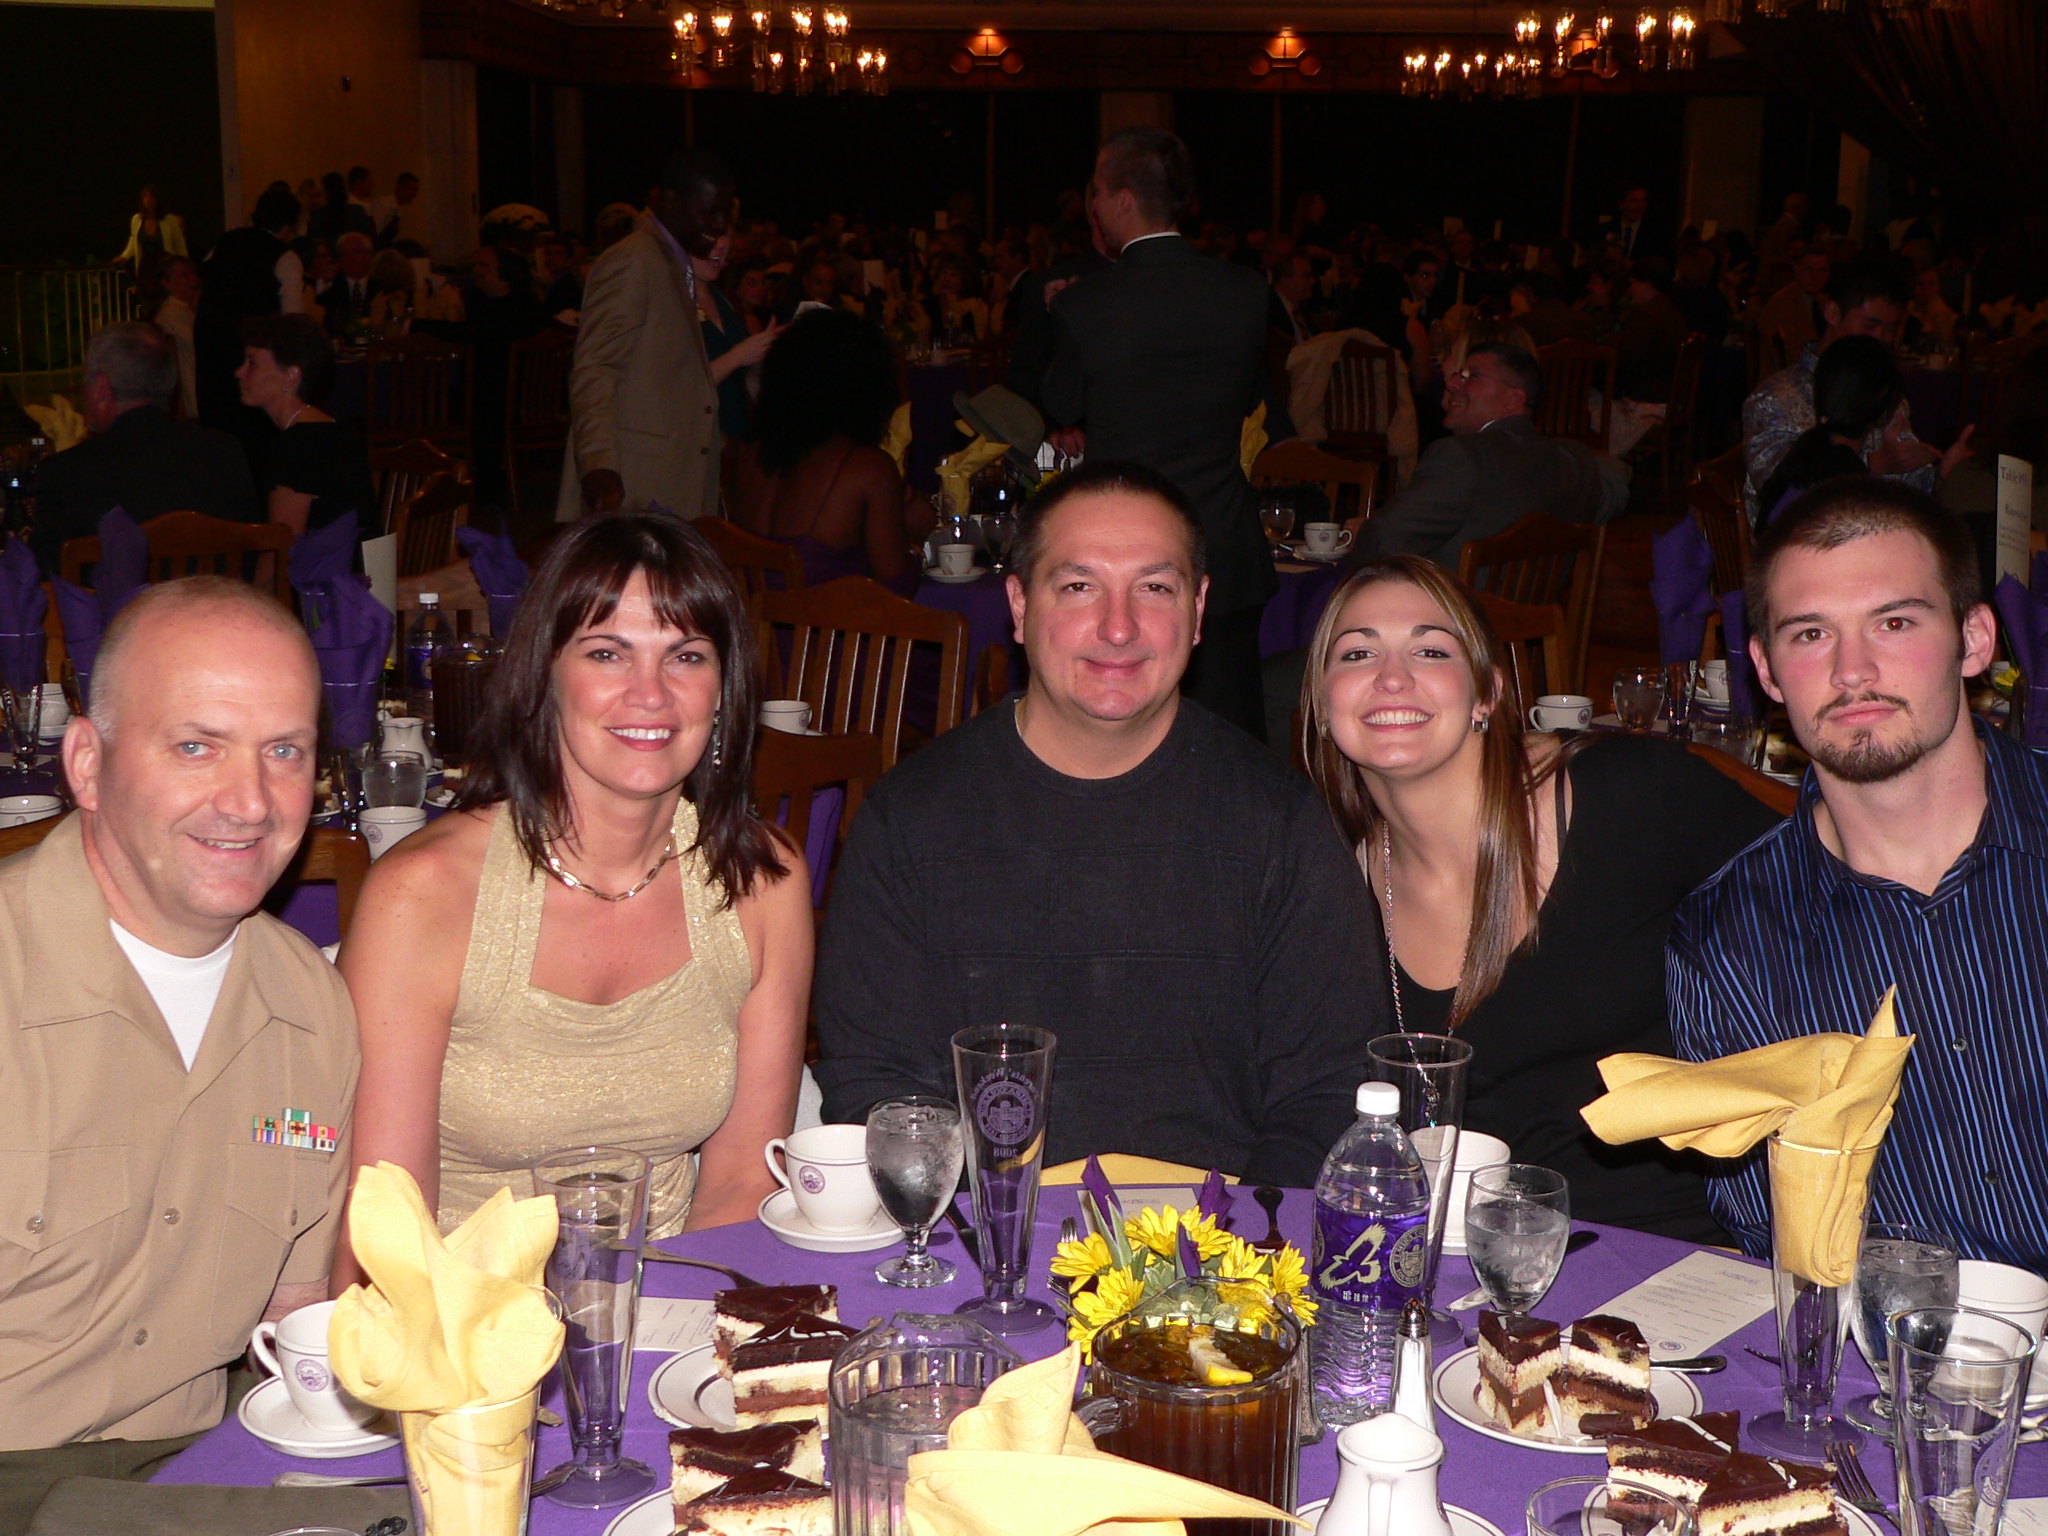 Miembros de la familia reunidos para cenar | Foto: Flickr.com (CC BY 2.0 )